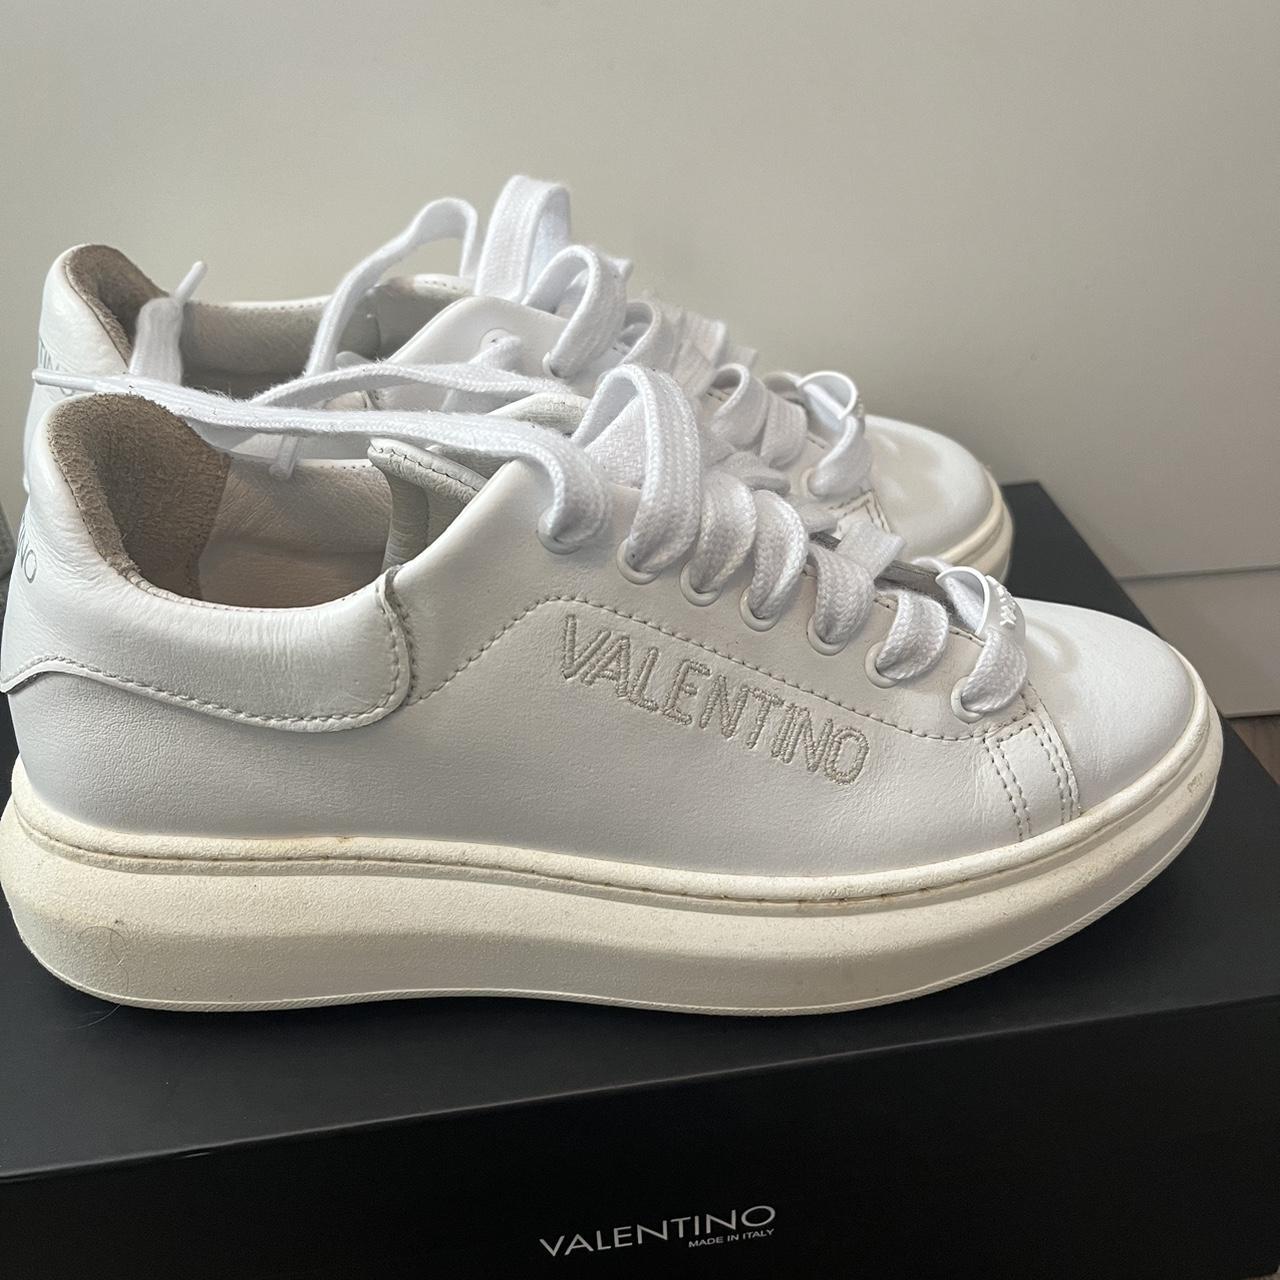 Valentino Women's White Trainers